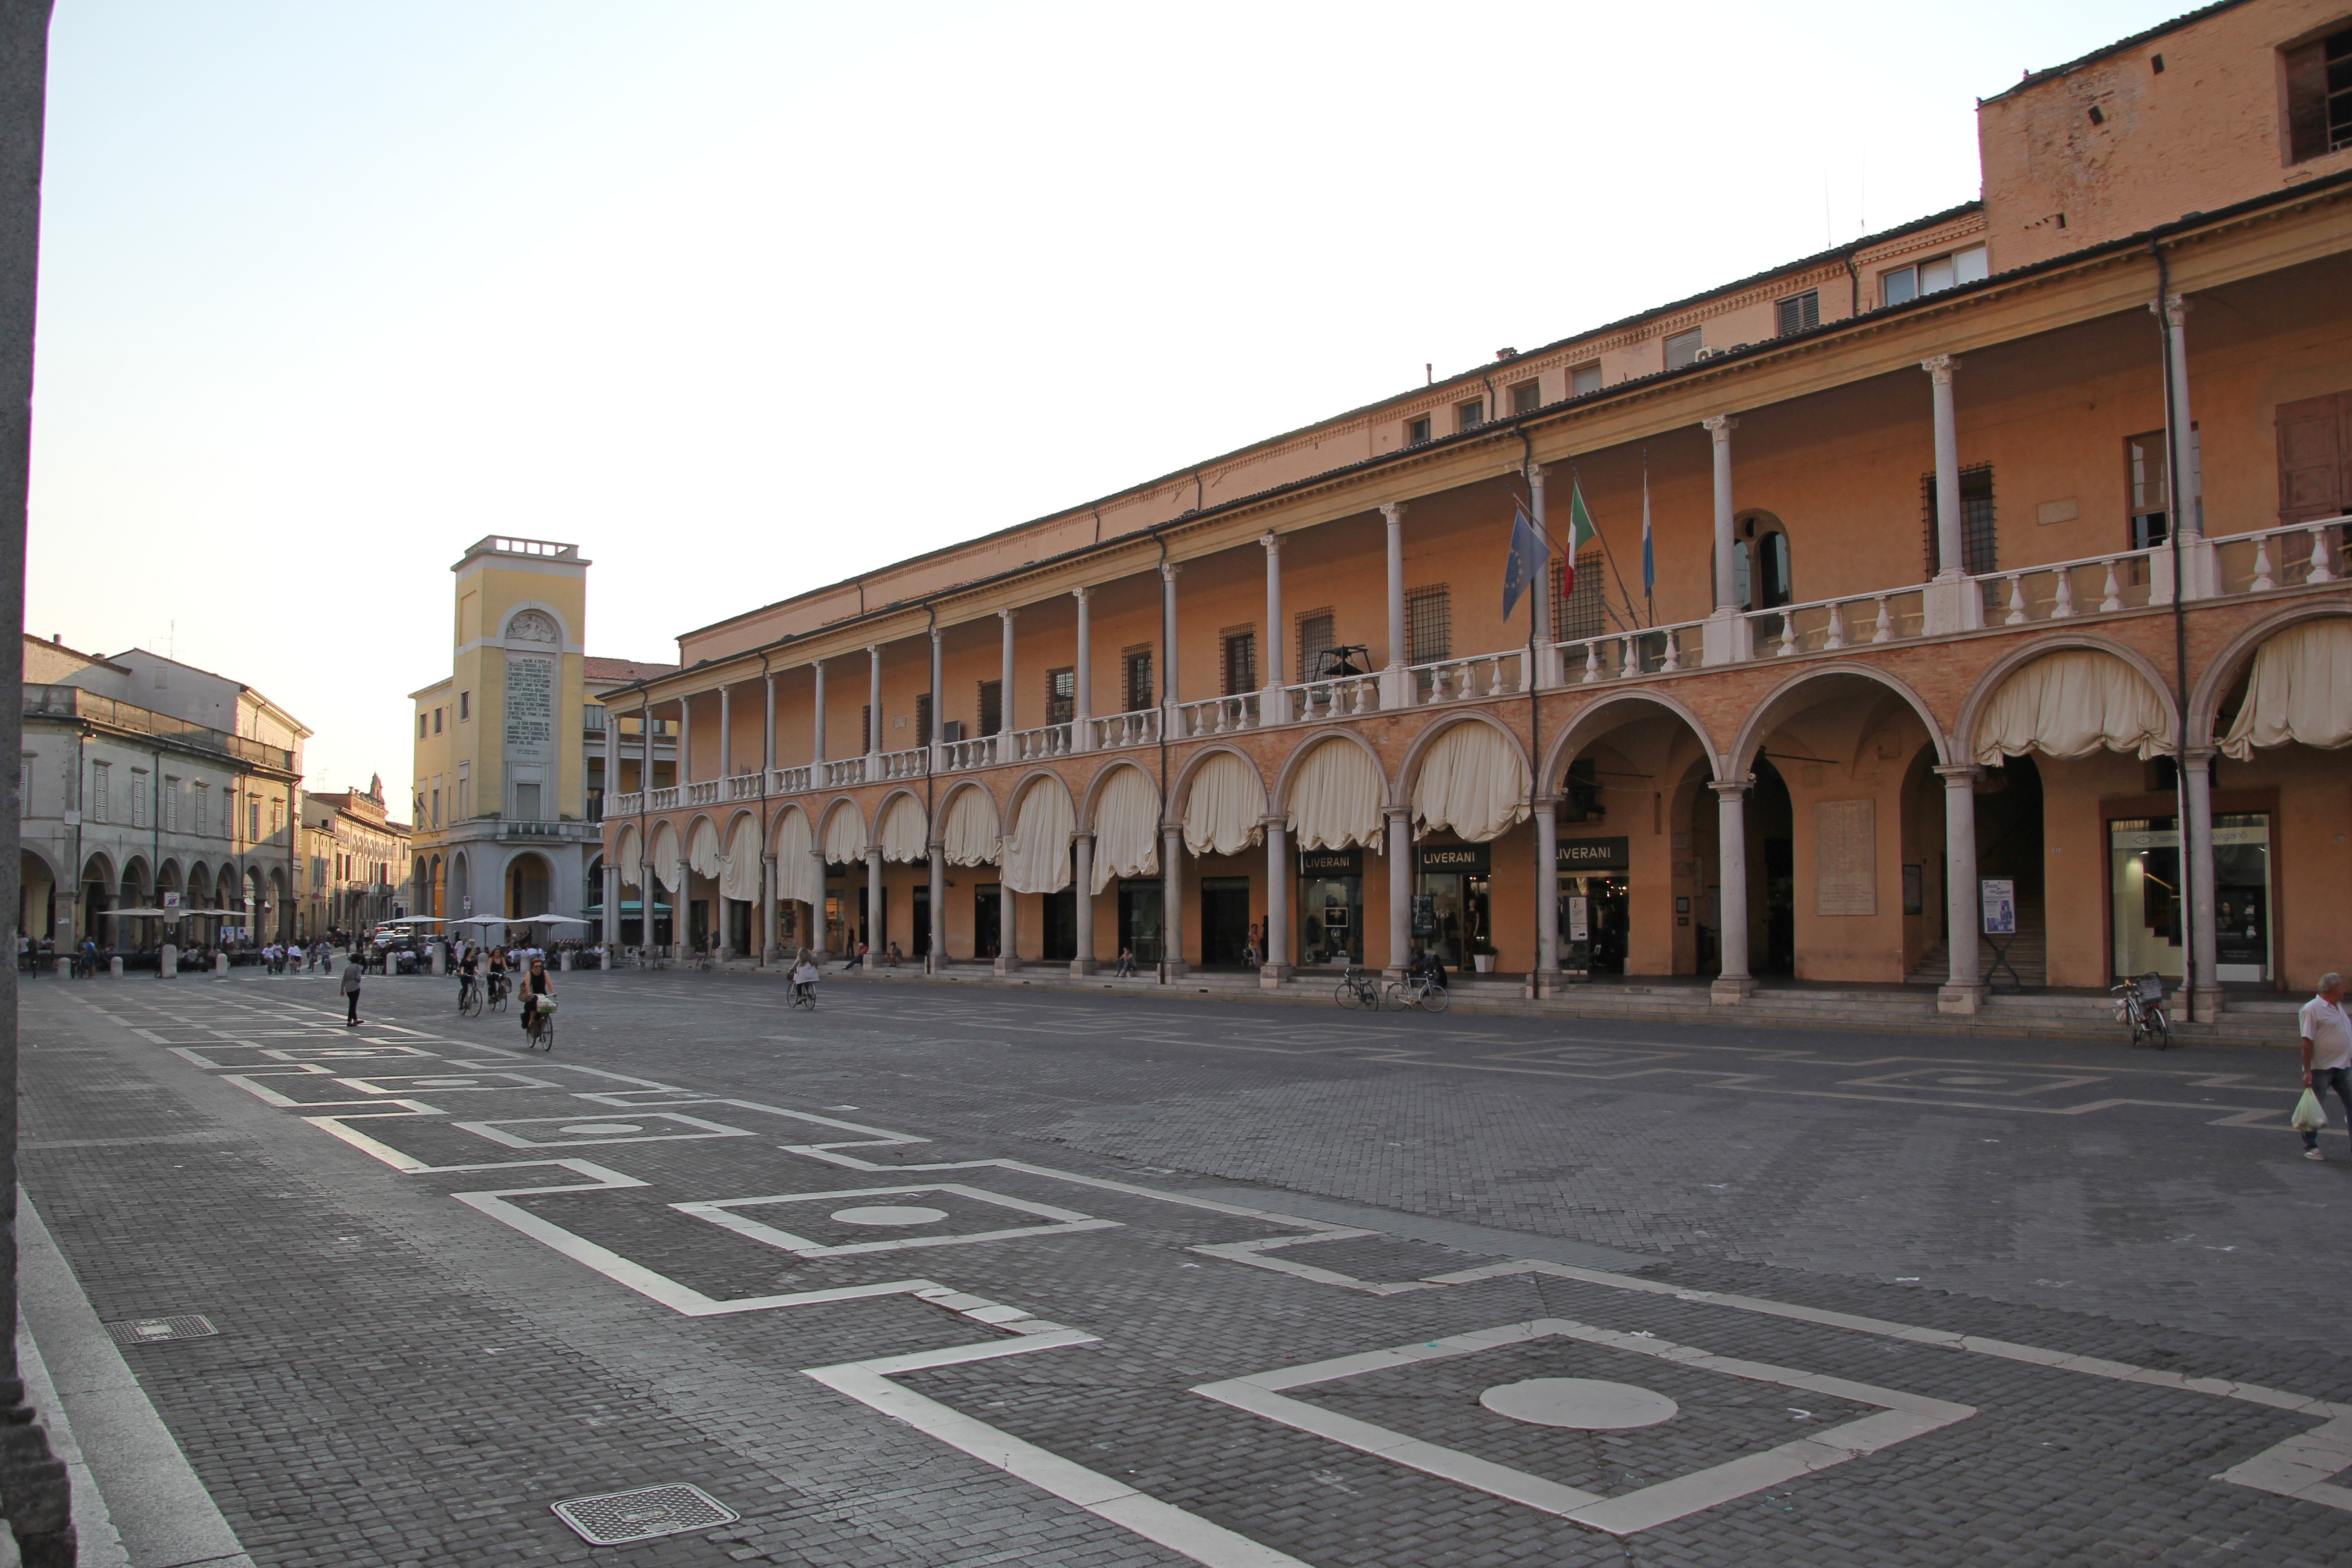 photo: https://upload.wikimedia.org/wikipedia/commons/f/fa/Faenza%2C_piazza_del_Popolo_%2802%29.jpg